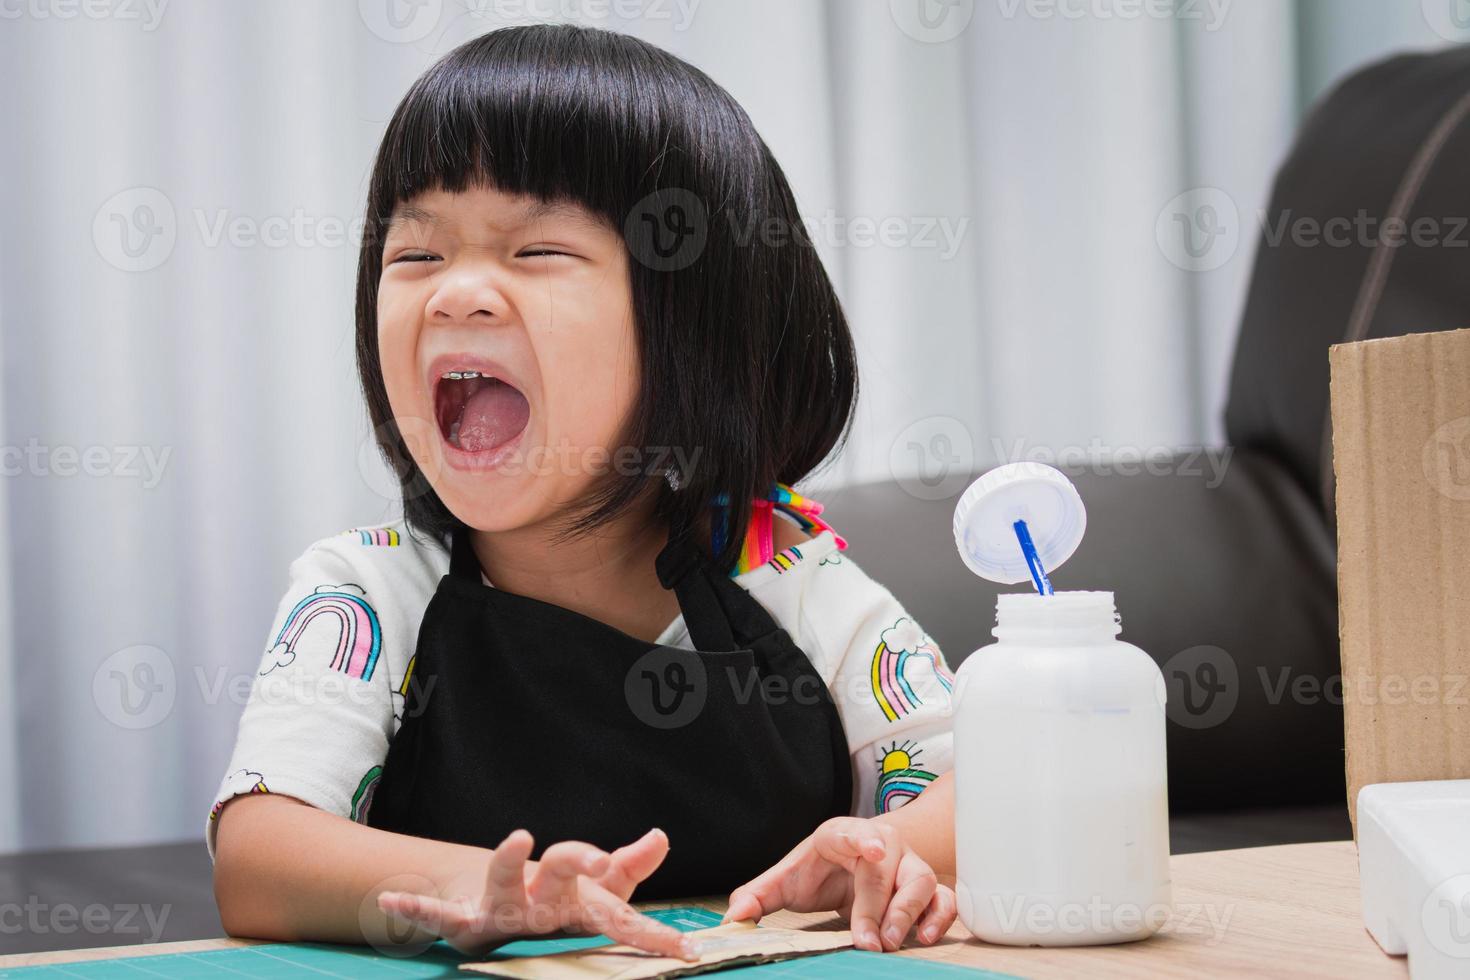 heureuse fille asiatique portant un tablier noir, rire d'enfant tout en collant un morceau d'artisanat. le concept d'apprentissage par le jeu. enfant de 4 à 5 ans. photo